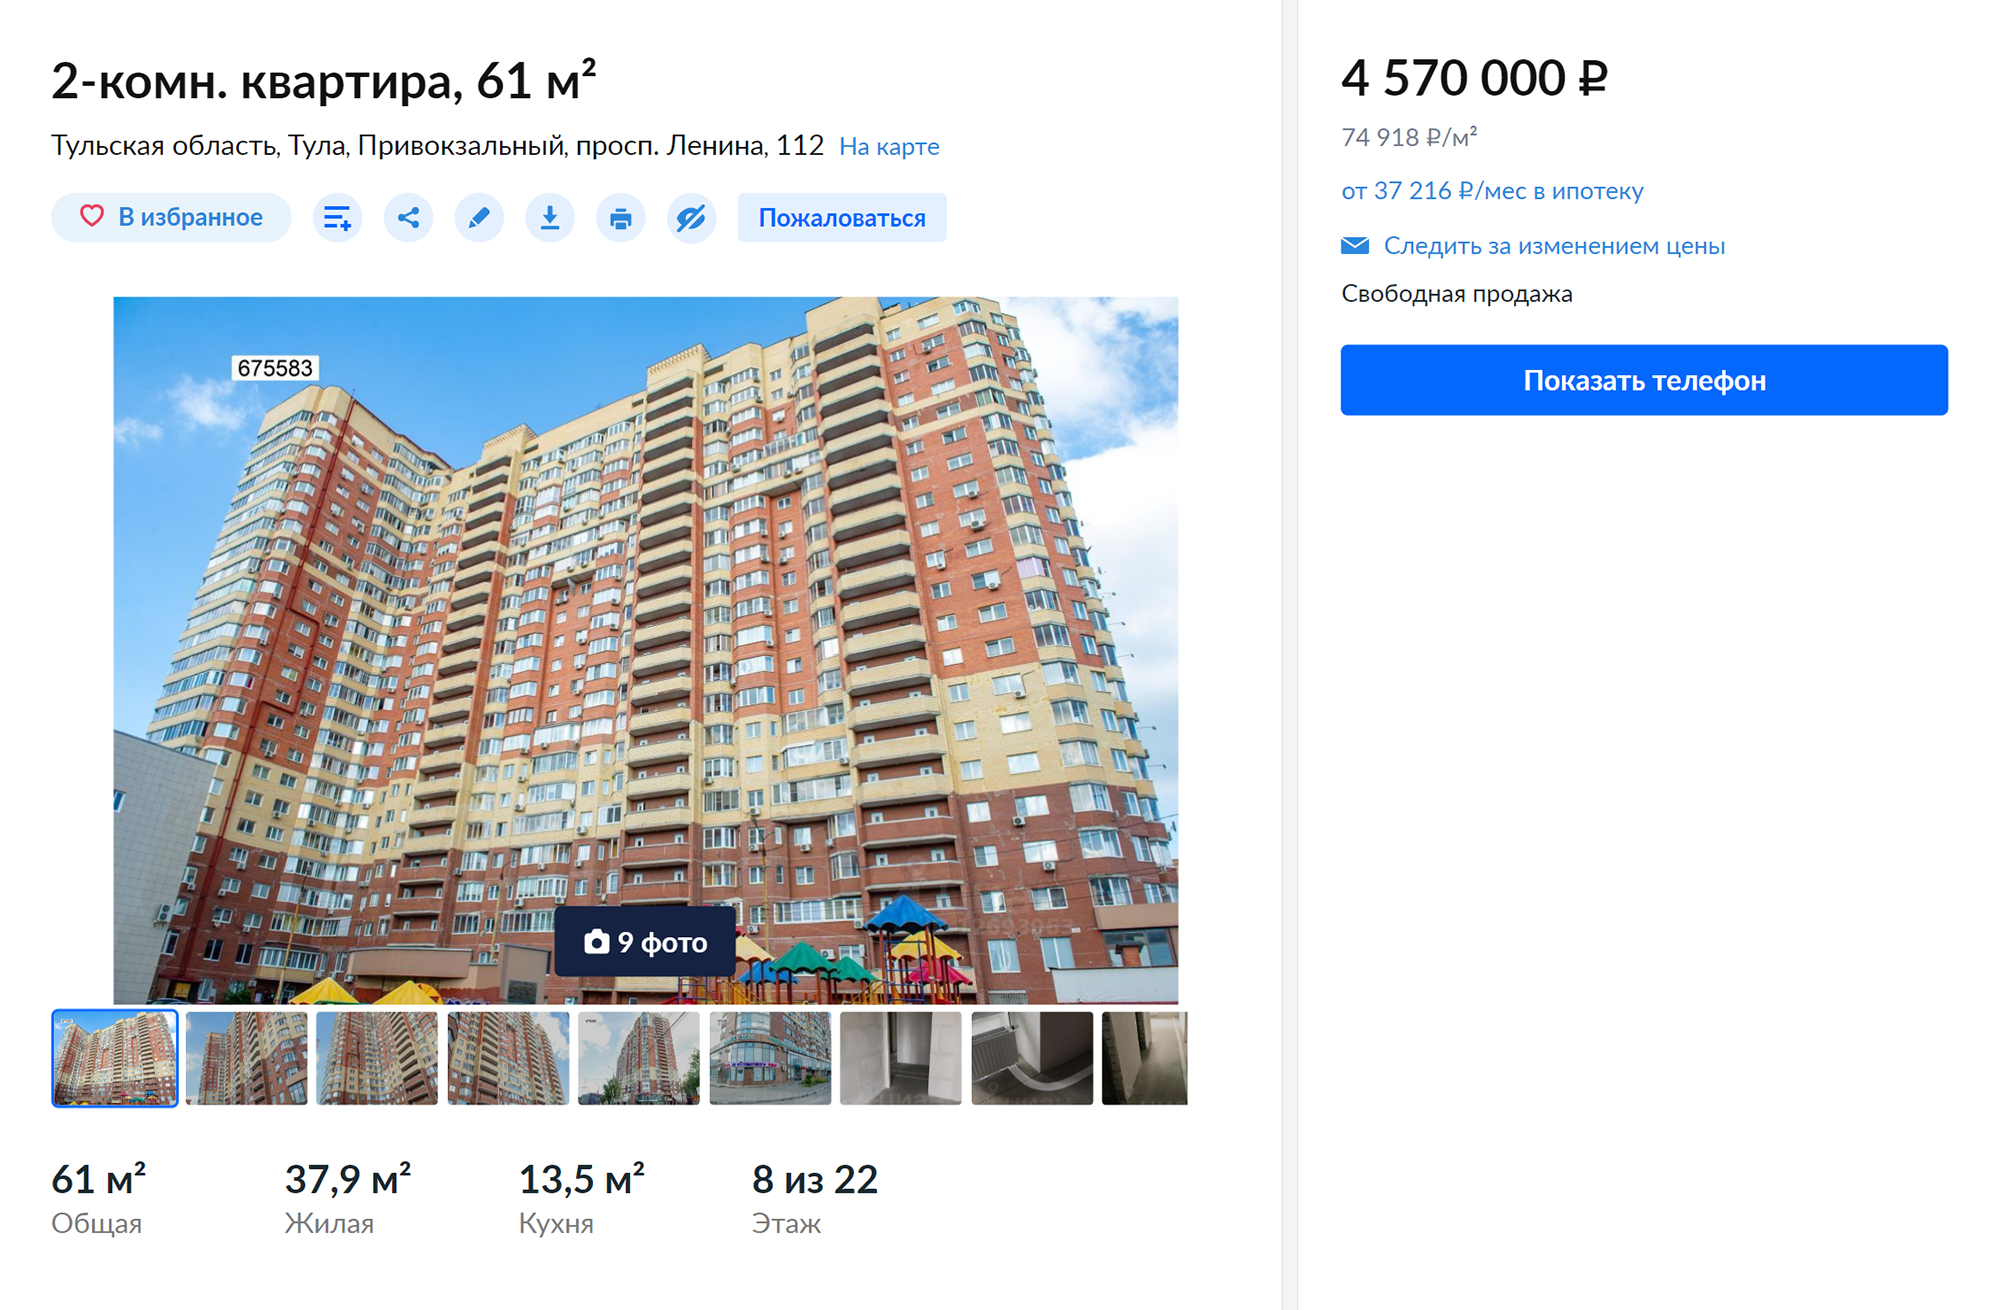 Это объявление кажется мне подозрительным: цена слишком занижена для такой площади и района. Похожие квартиры продаются примерно за 5 400 000⁠—⁠5 800 000 ₽. Источник: cian.ru